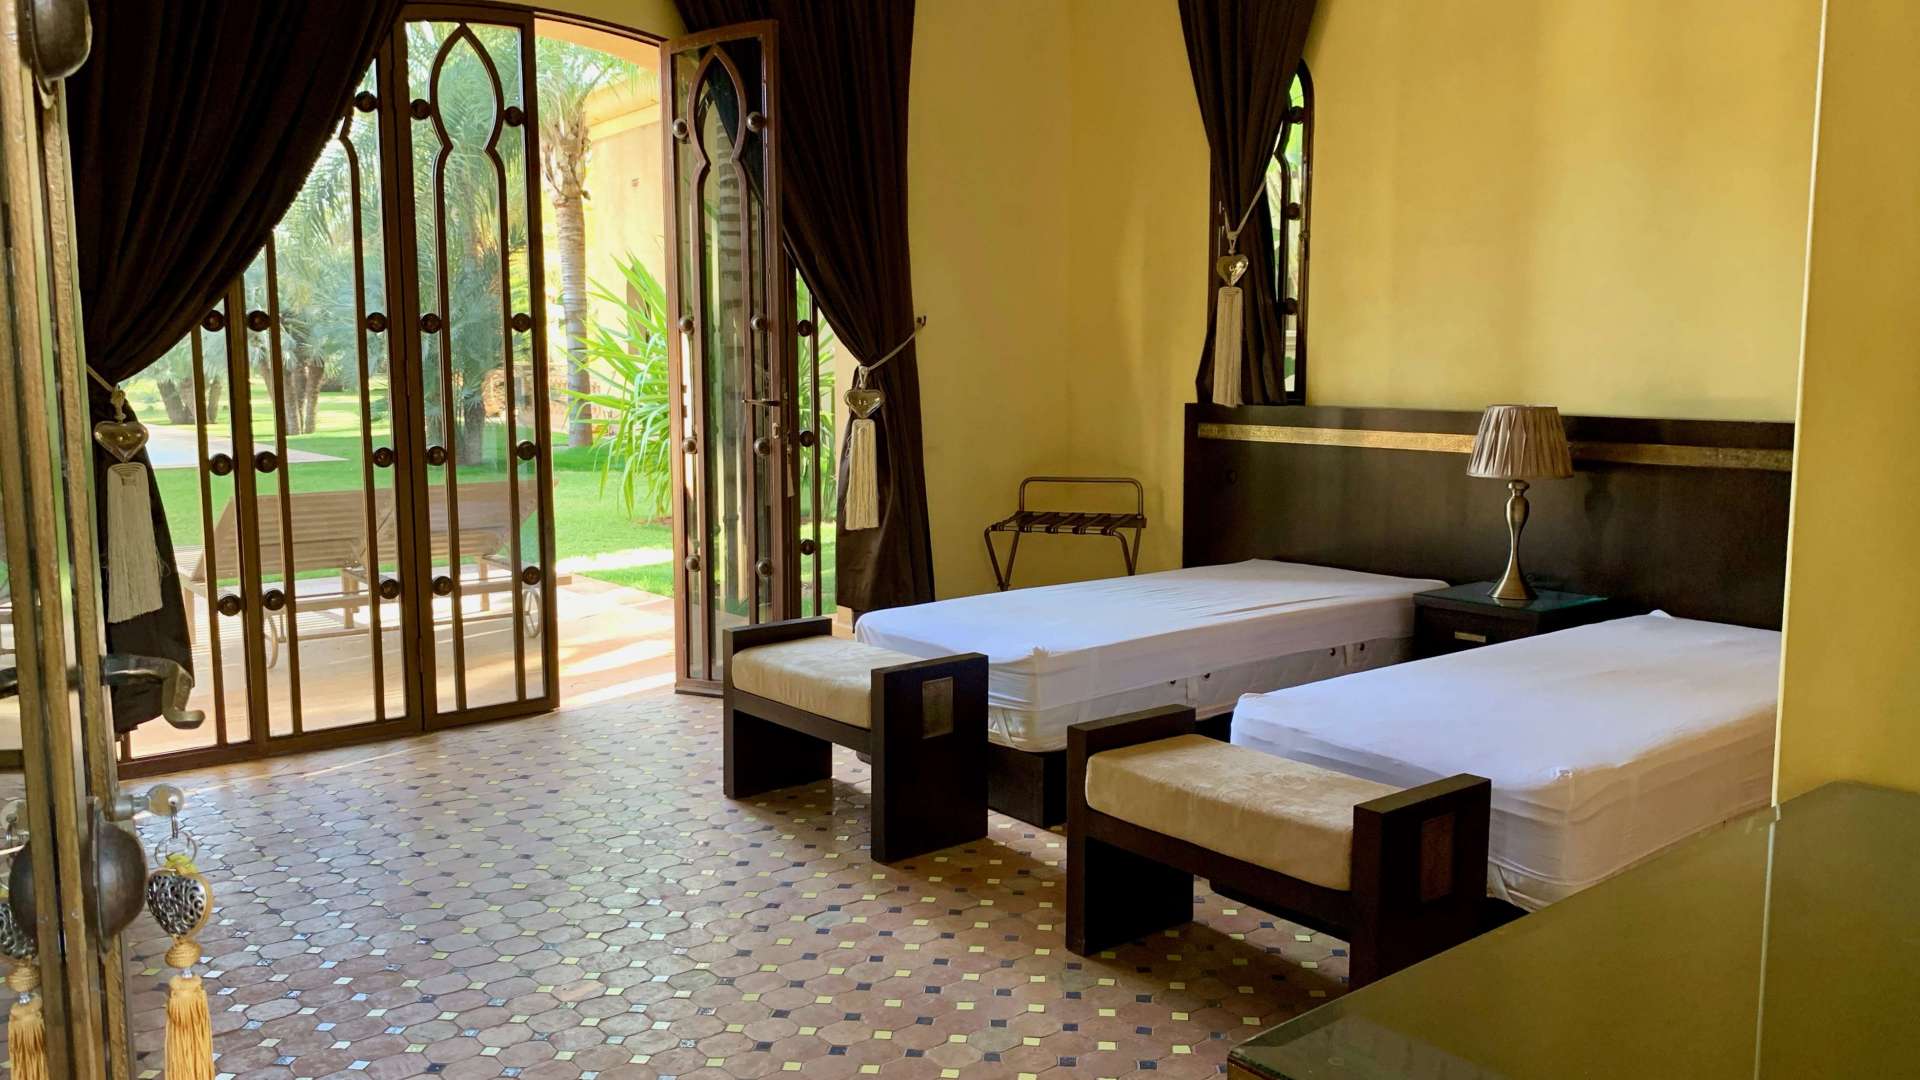 Vente,Villa,Somptueuse propriété privée de luxe à vendre à 30 min. du centre de Marrakech,Marrakech,Route de Fès